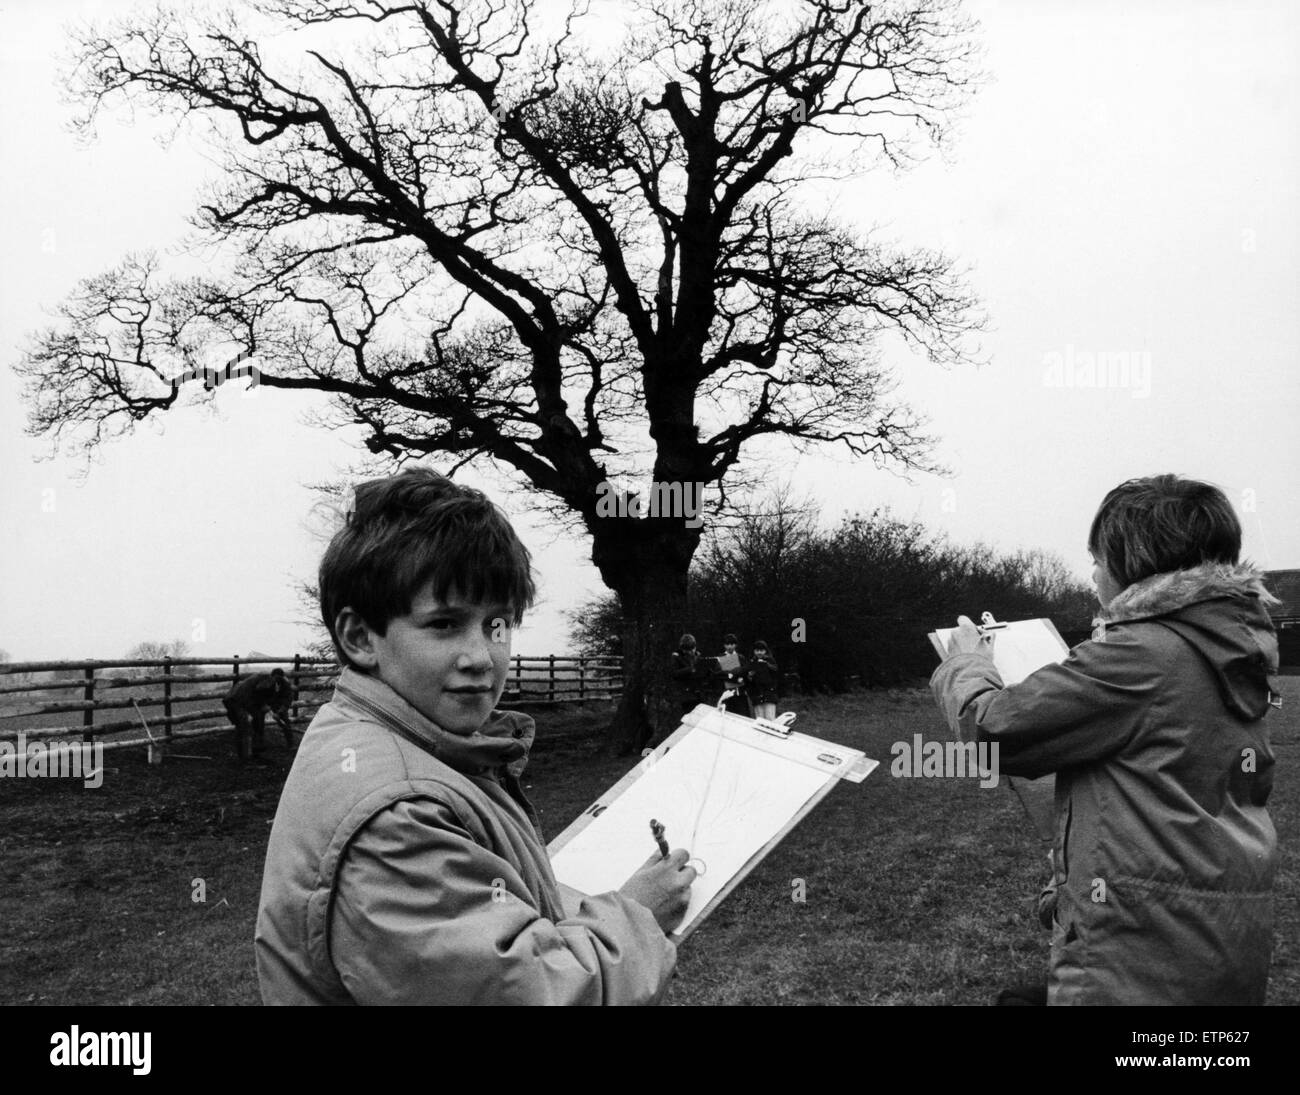 Kinder von Westlands Spezialschule, Thornaby, Durchführung einer sechsmonatigen Studie einer 200 Jahre alten Eiche im Rahmen des Wettbewerbs große britische Eiche, Thornaby, 15. März 1986. Stockfoto